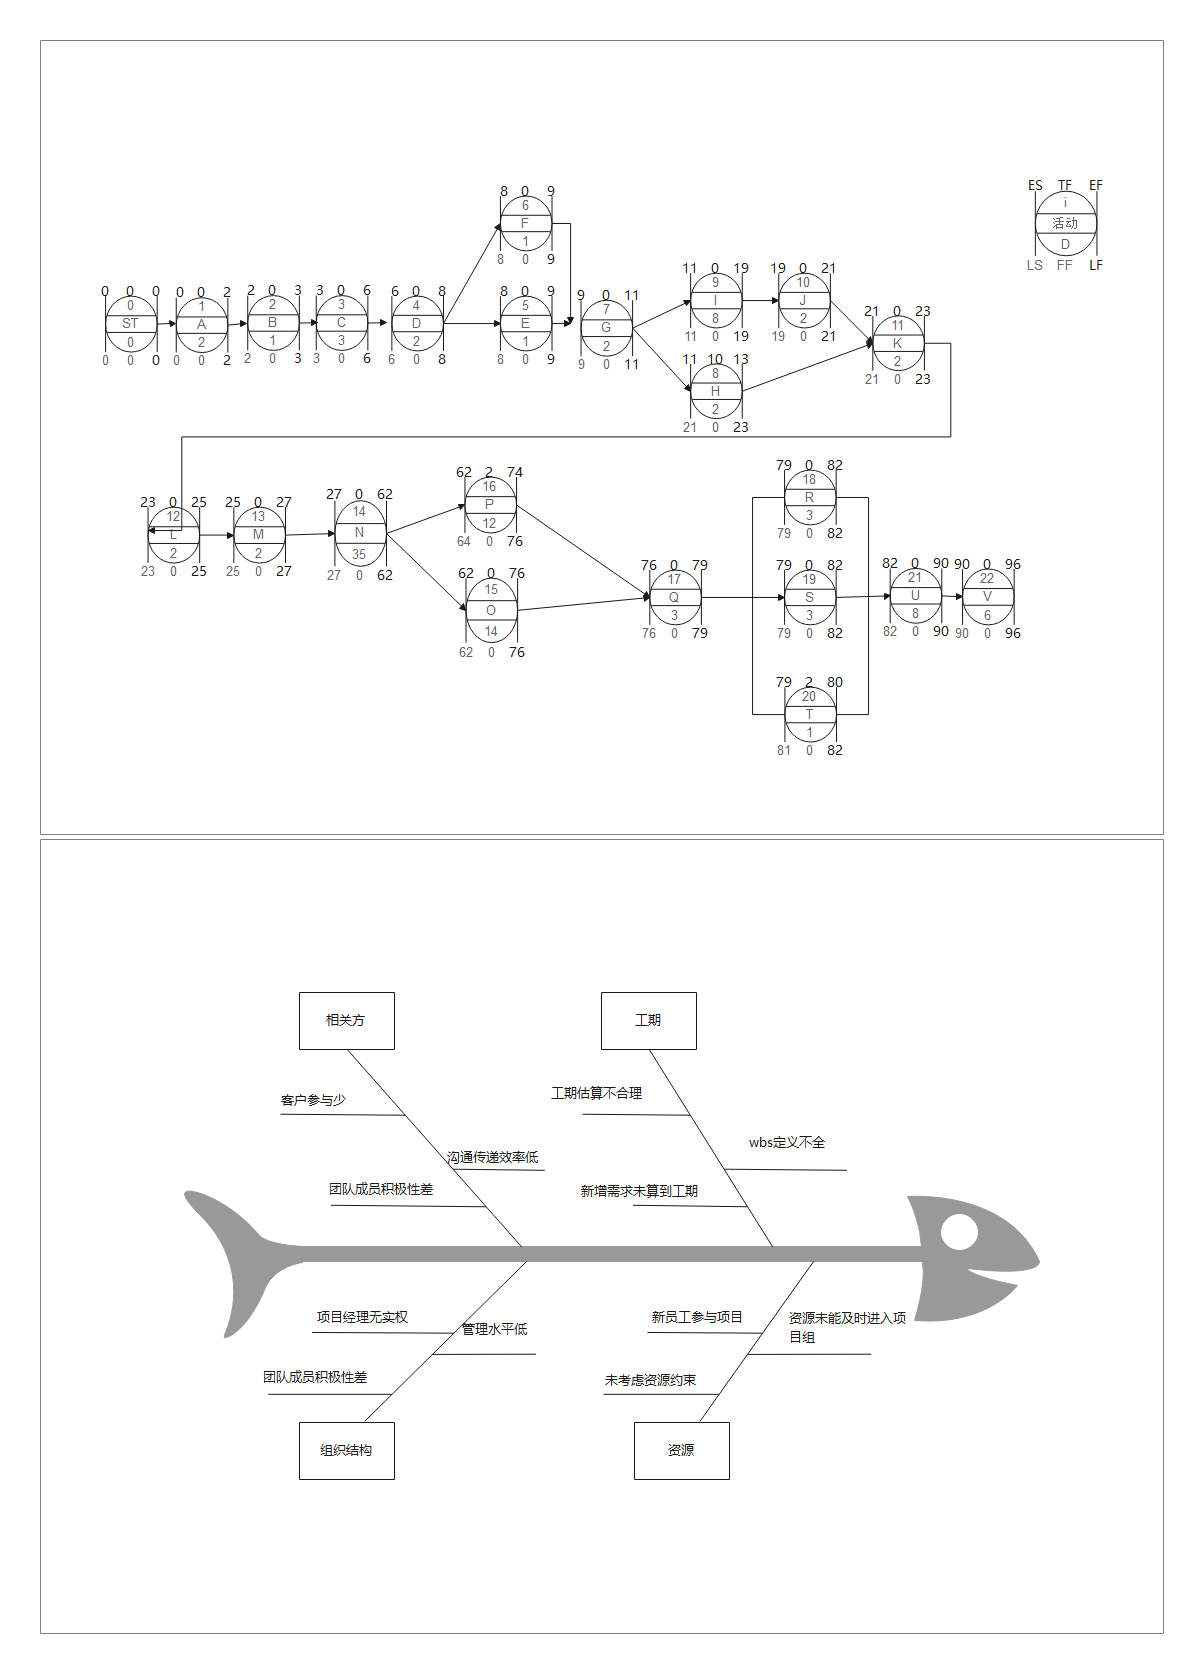 项目管理计划（网络图，鱼骨图）